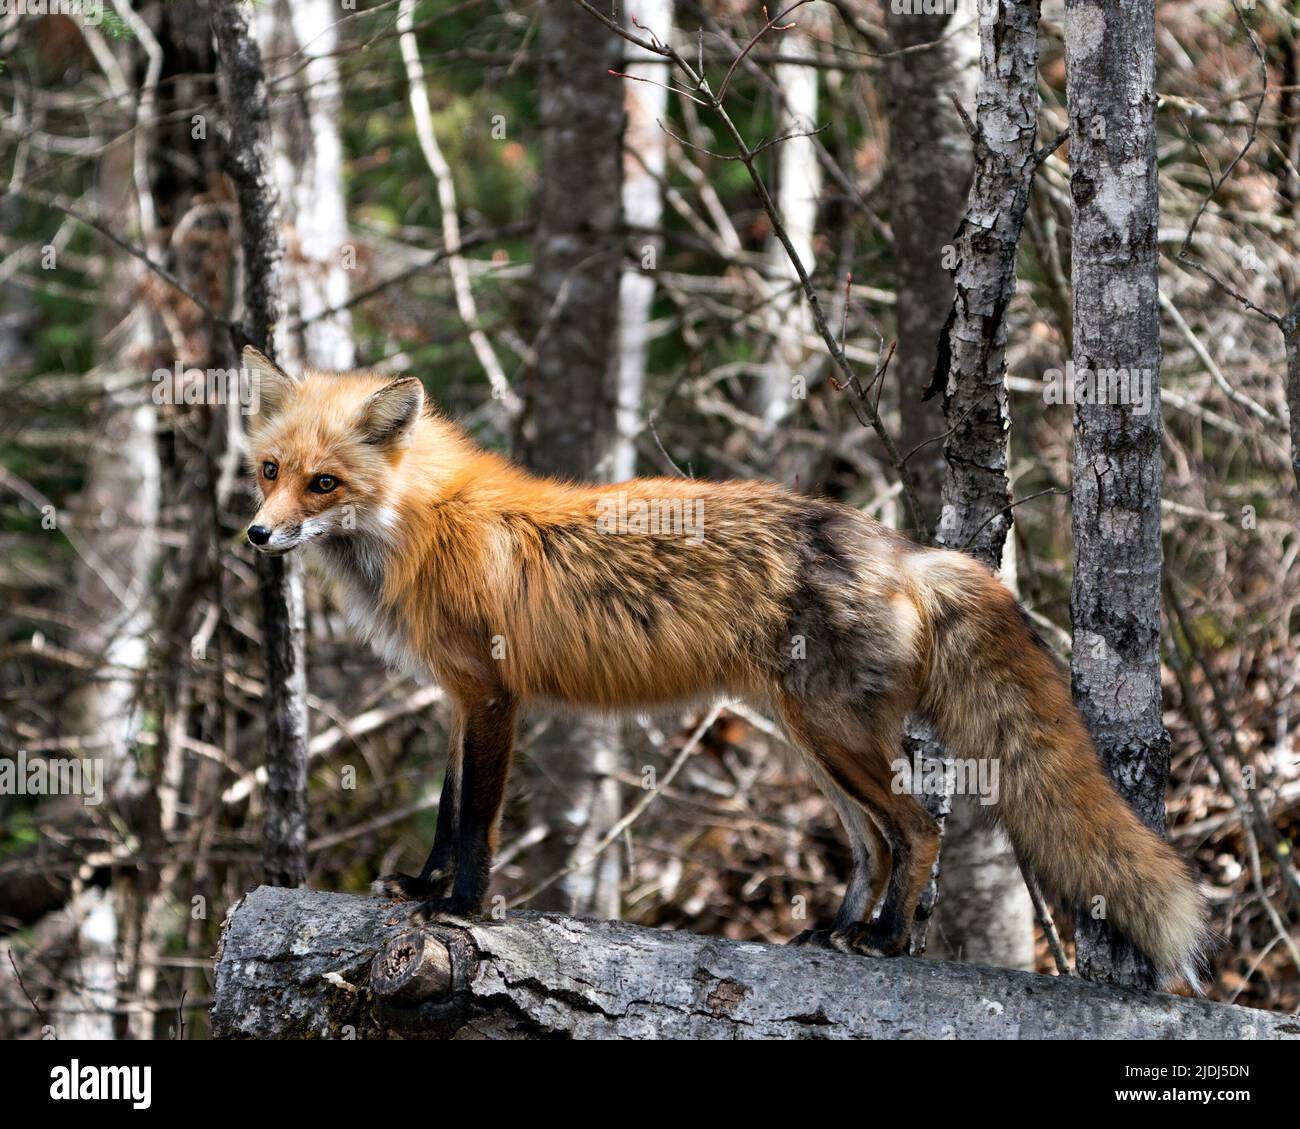 Red Fox in piedi sul log con sfondo foresta sfocata e godere del suo ambiente e habitat. Immagine Fox. Immagine. Verticale. Foto Stock